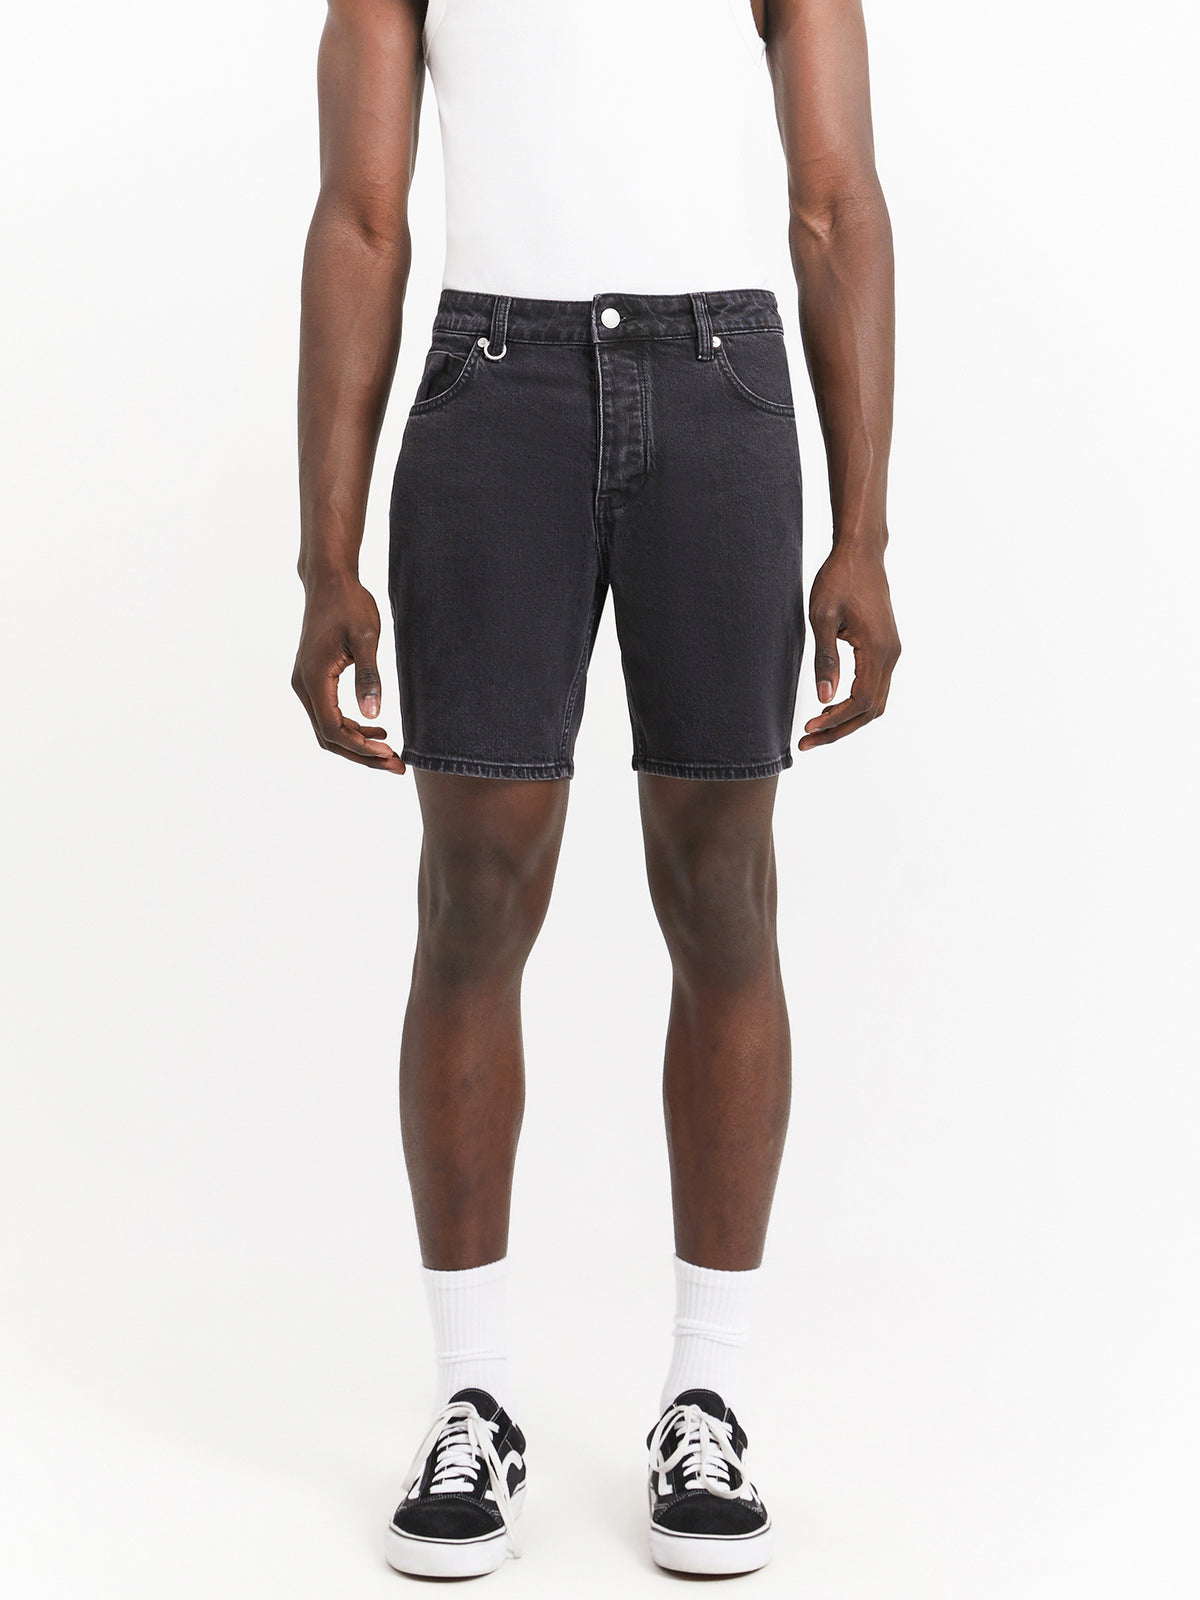 Lou Denim Shorts in Transit Washed Black